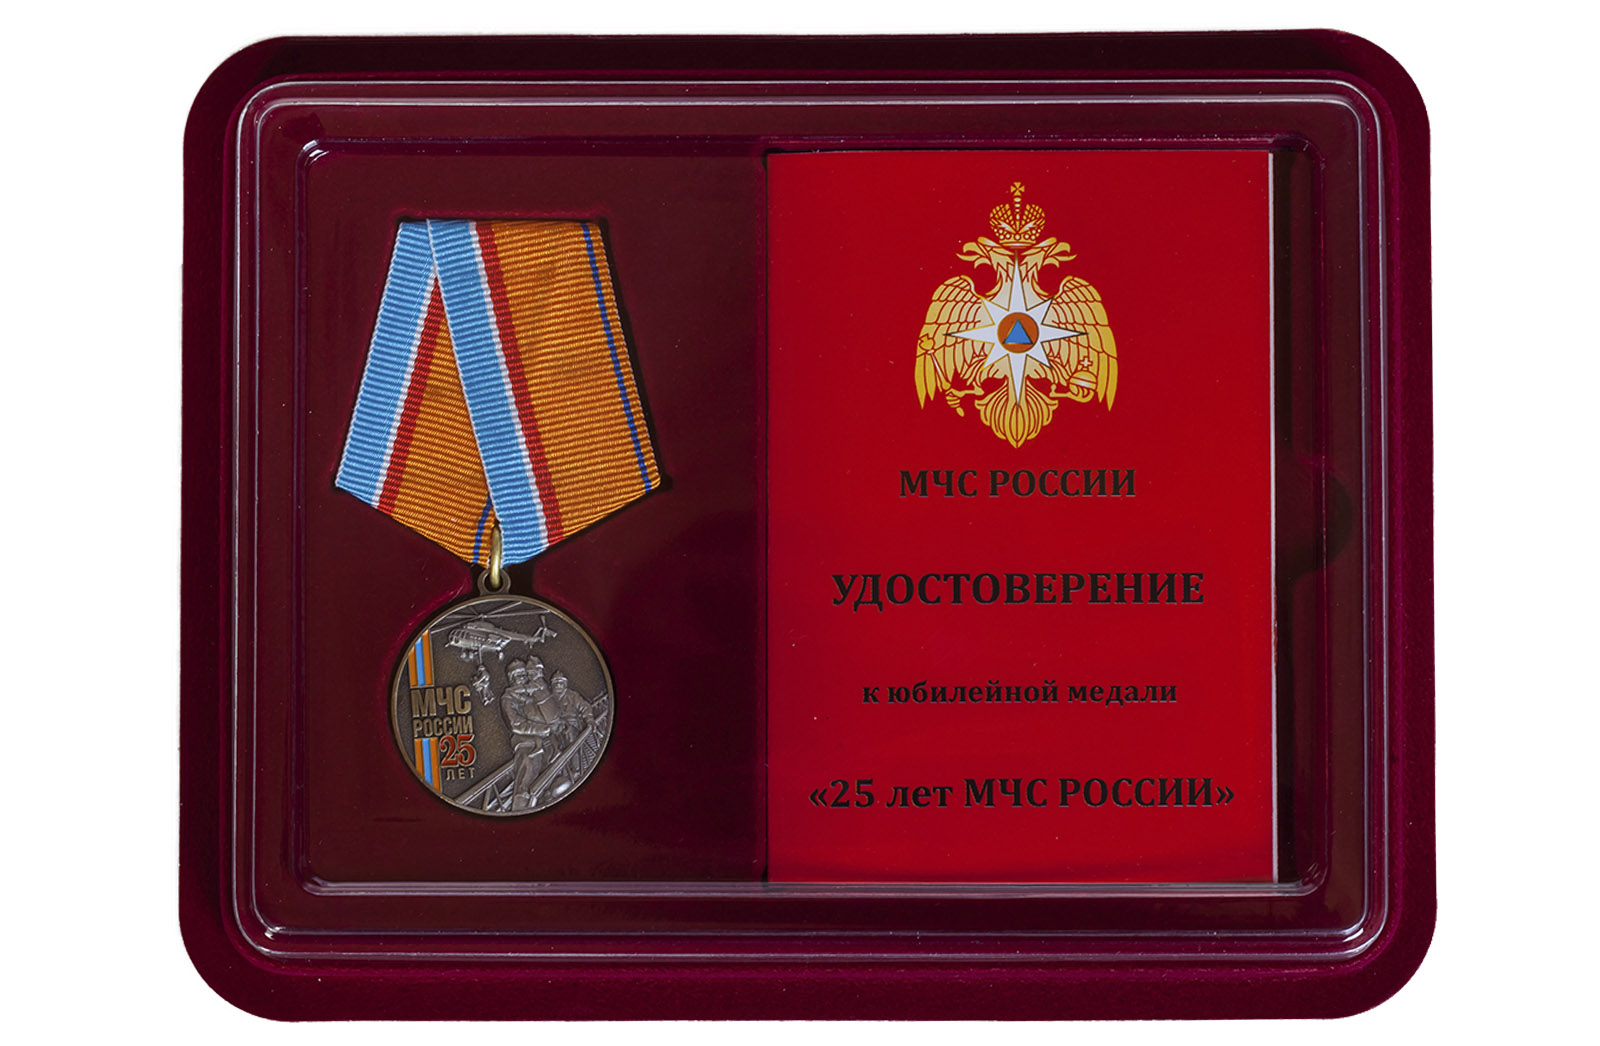 Купить общественную медаль "МЧС России" в подарок мужчине